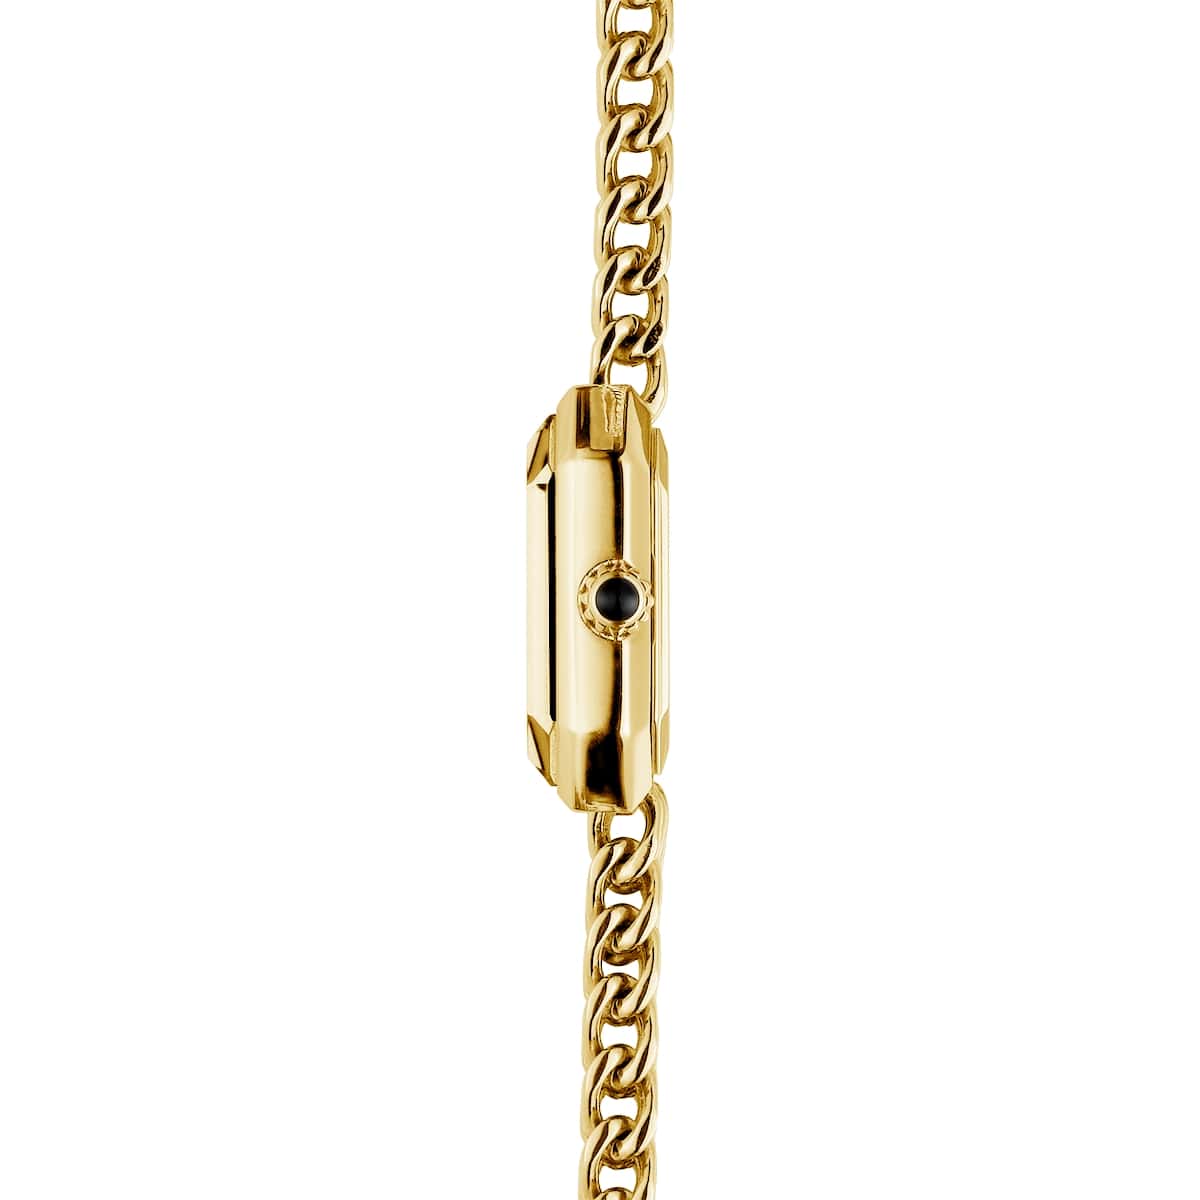 Montre Femme OCTOGONE bracelet acier inoxydable doré cadran noir 17436BP49